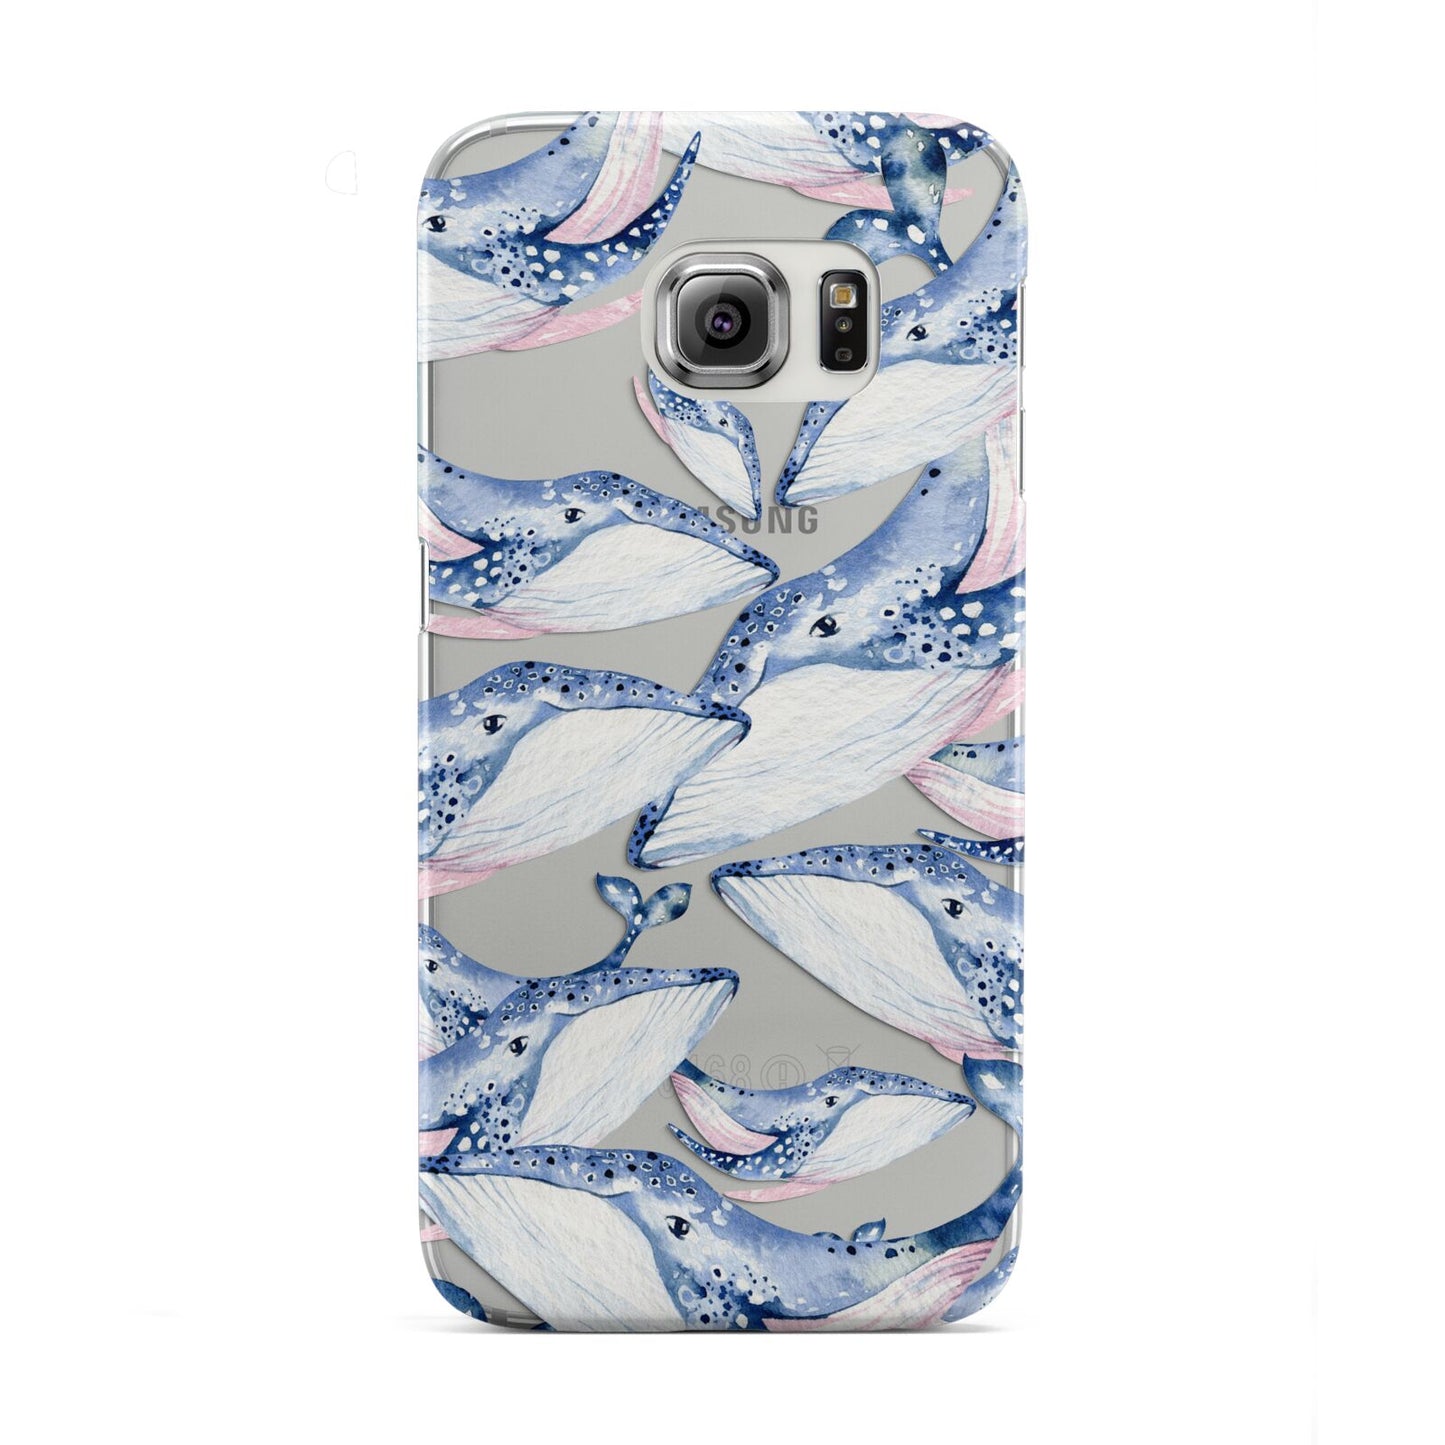 Whale Samsung Galaxy S6 Edge Case